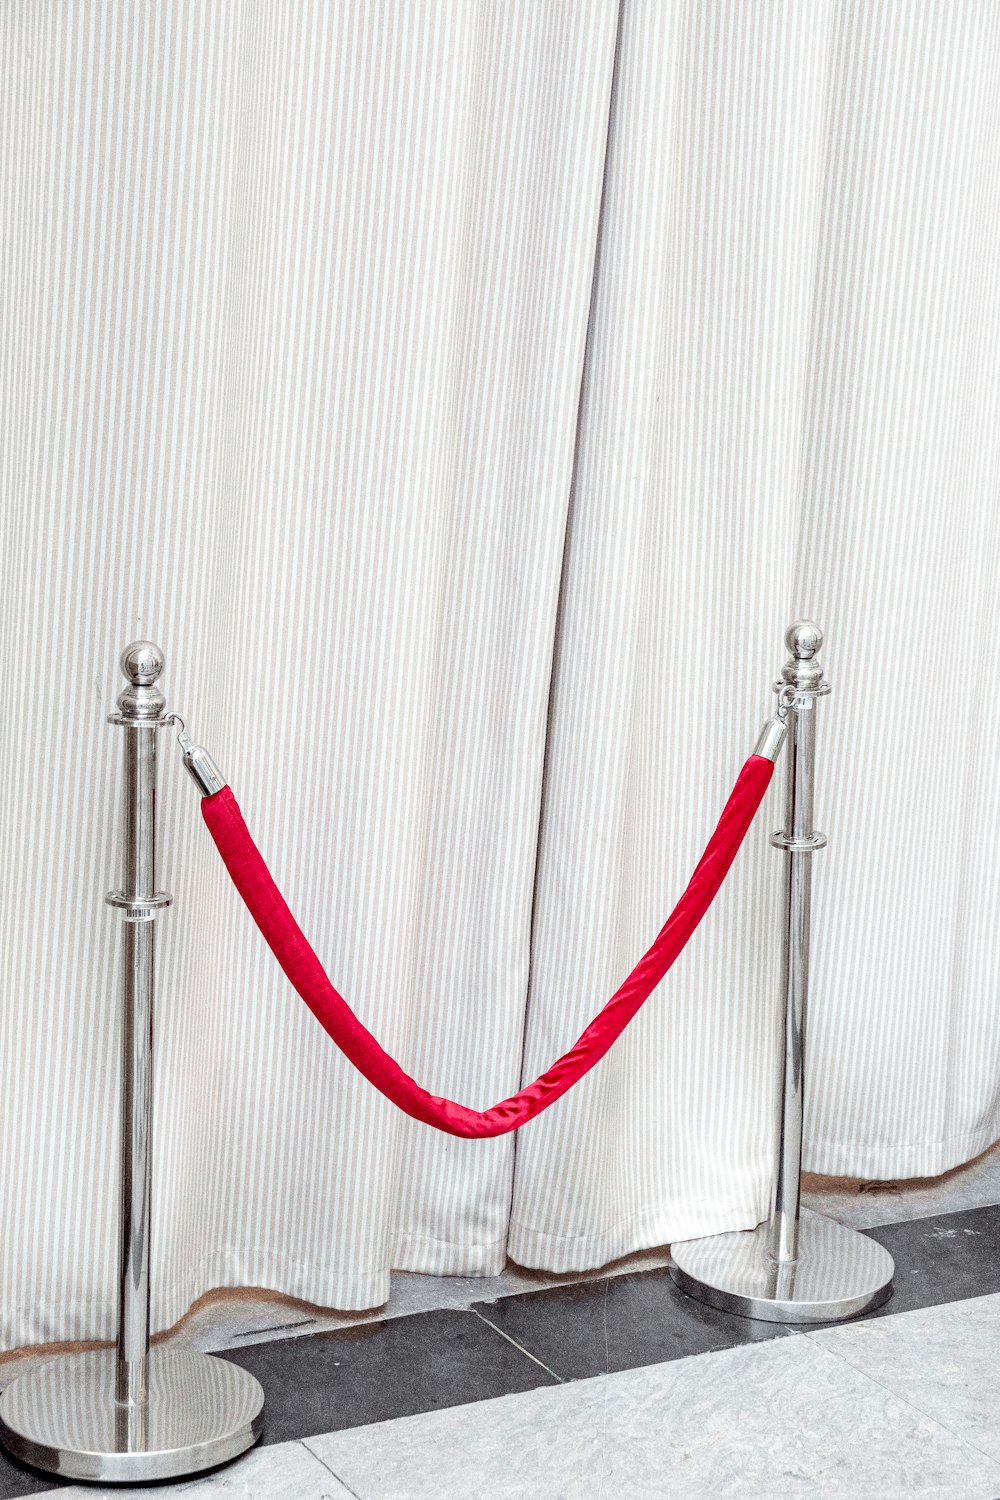 白い金属棒に赤と白のロープ